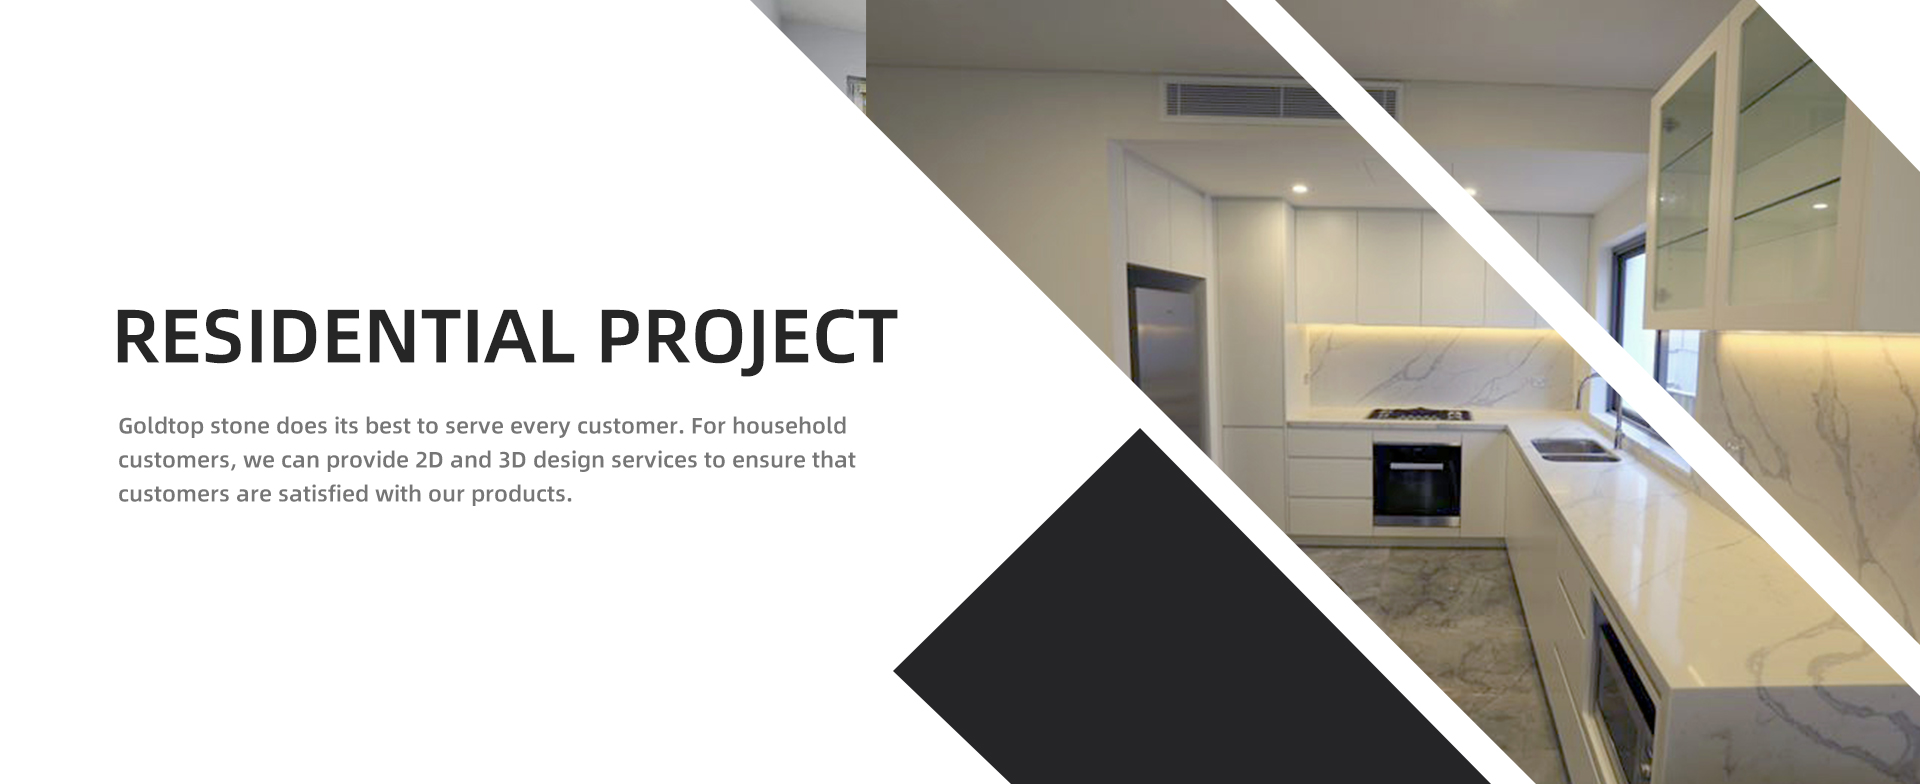 Projet résidentiel Goldtop stone fait de son mieux pour servir chaque client. Pour les clients résidentiels, nous pouvons fournir des services de conception 2D et 3D pour nous assurer que les clients sont satisfaits de nos produits.